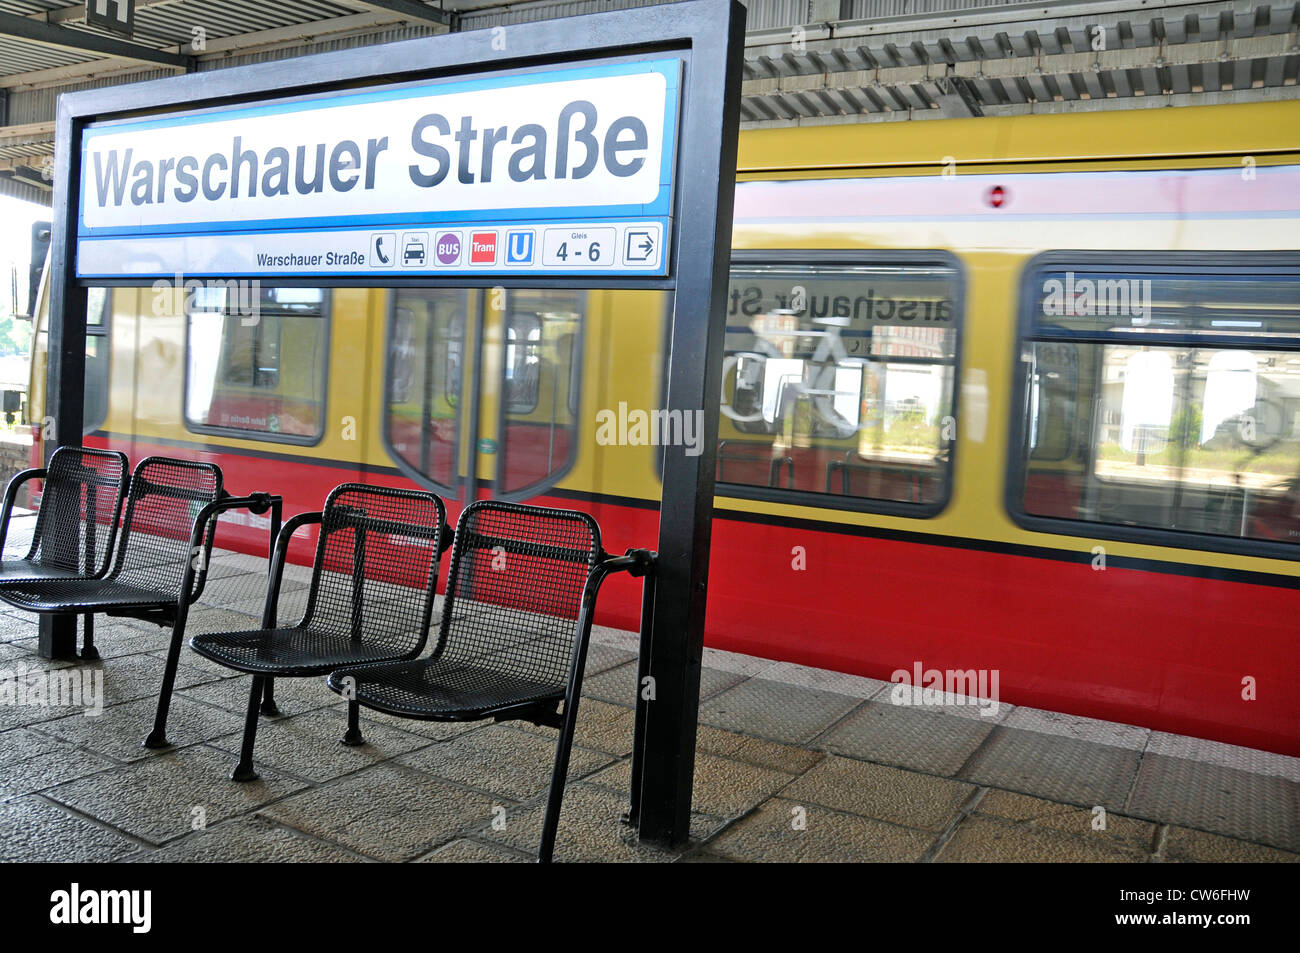 railway station Warschauer Strasse, Germany, Berlin Stock Photo